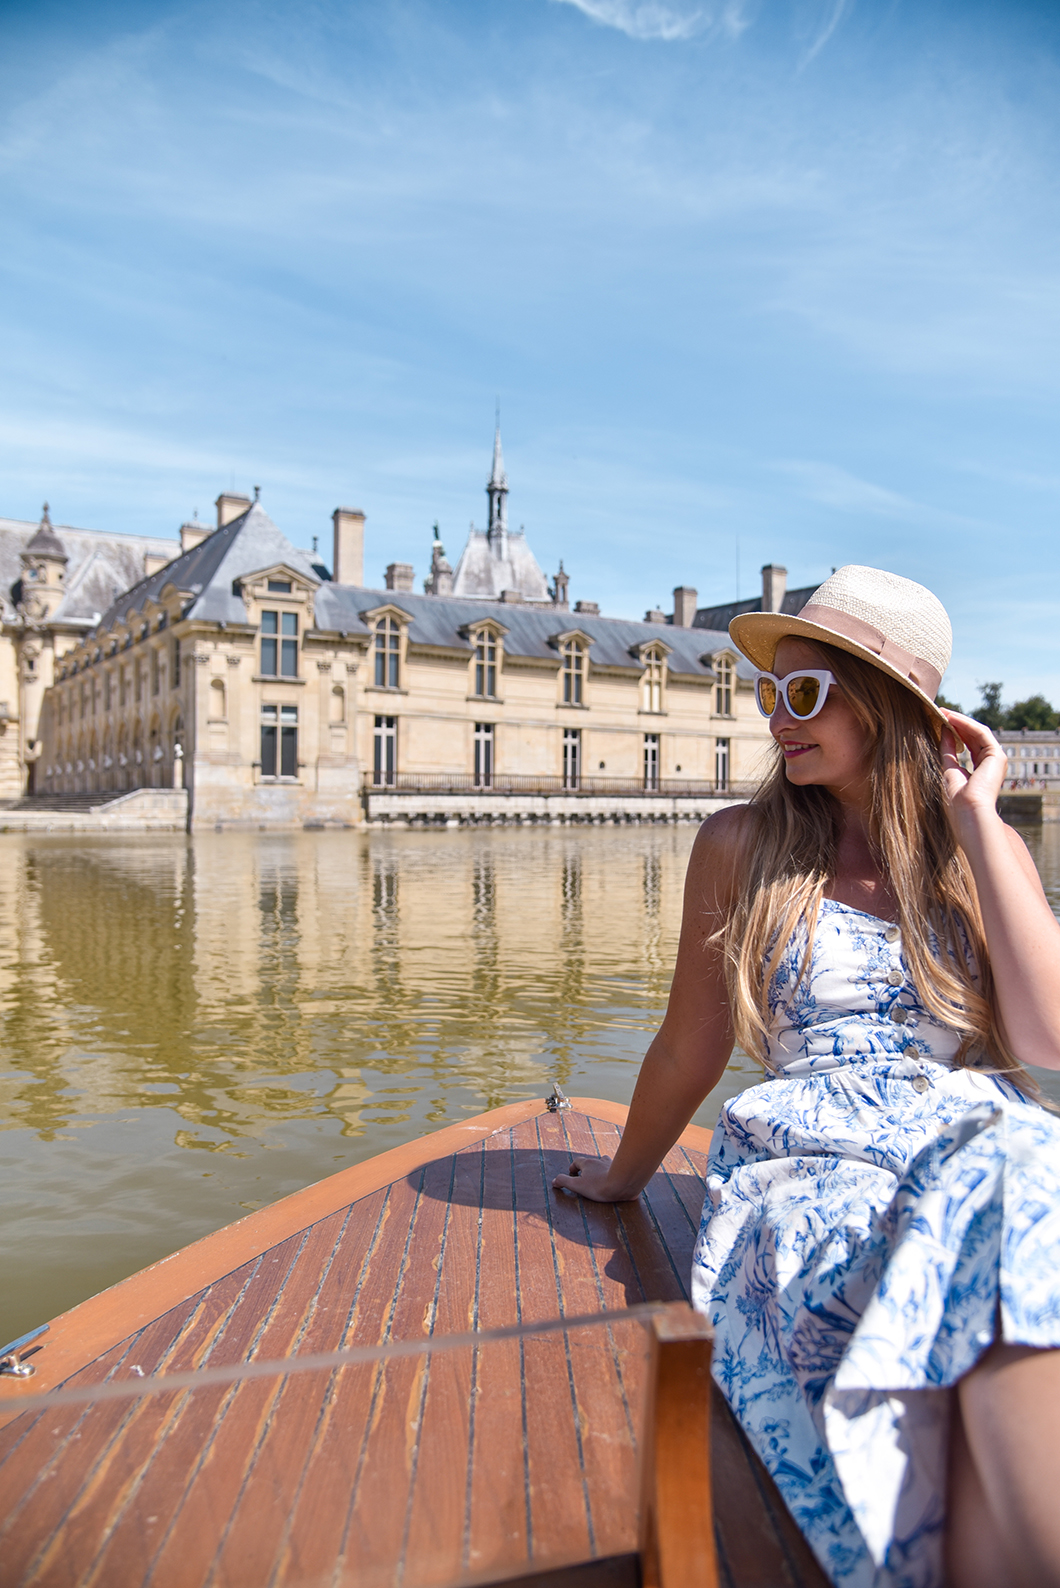 Activité à faire à Chantilly, louer un bateau sans permis au Chateau de Chantilly